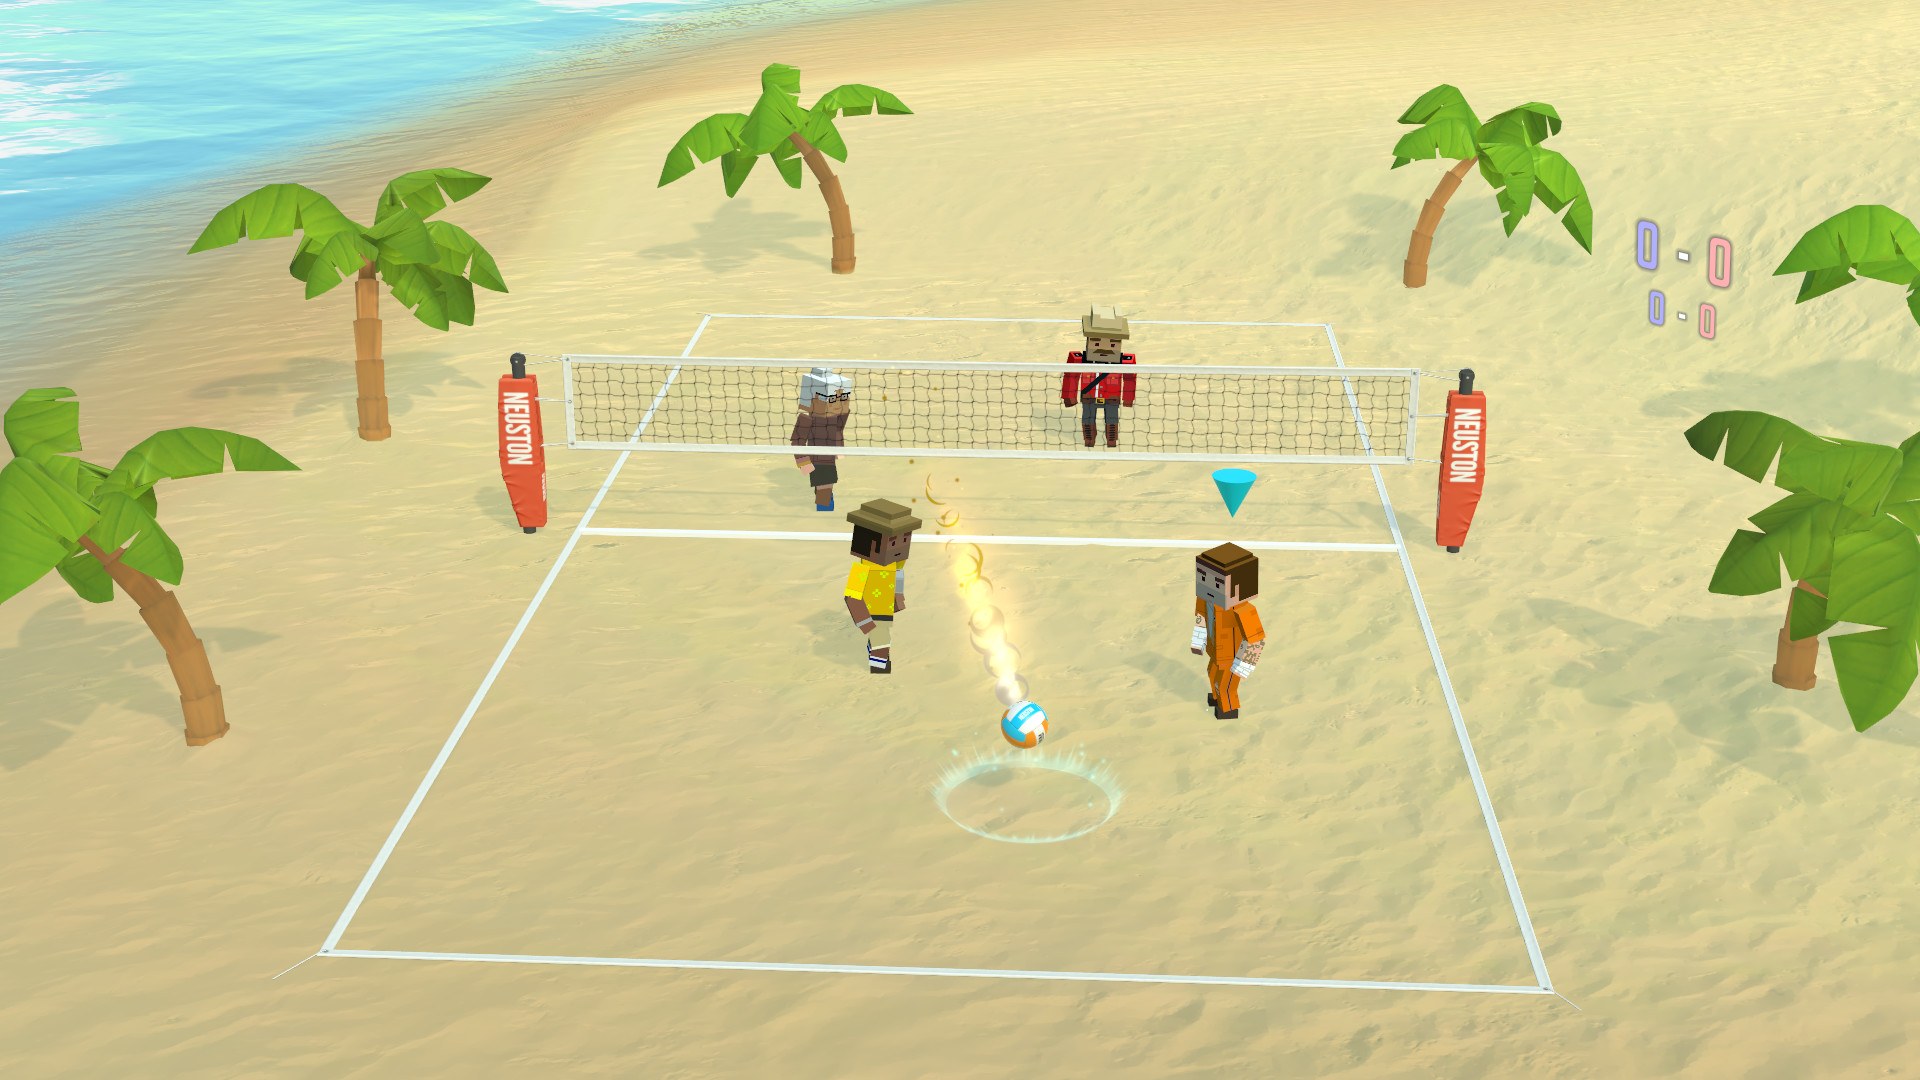 Упрощенная версия игры волейбол. Пляжный волейбол игра стим. Спортивные игры. Игра в волейбол. Спортивные игры на песке.